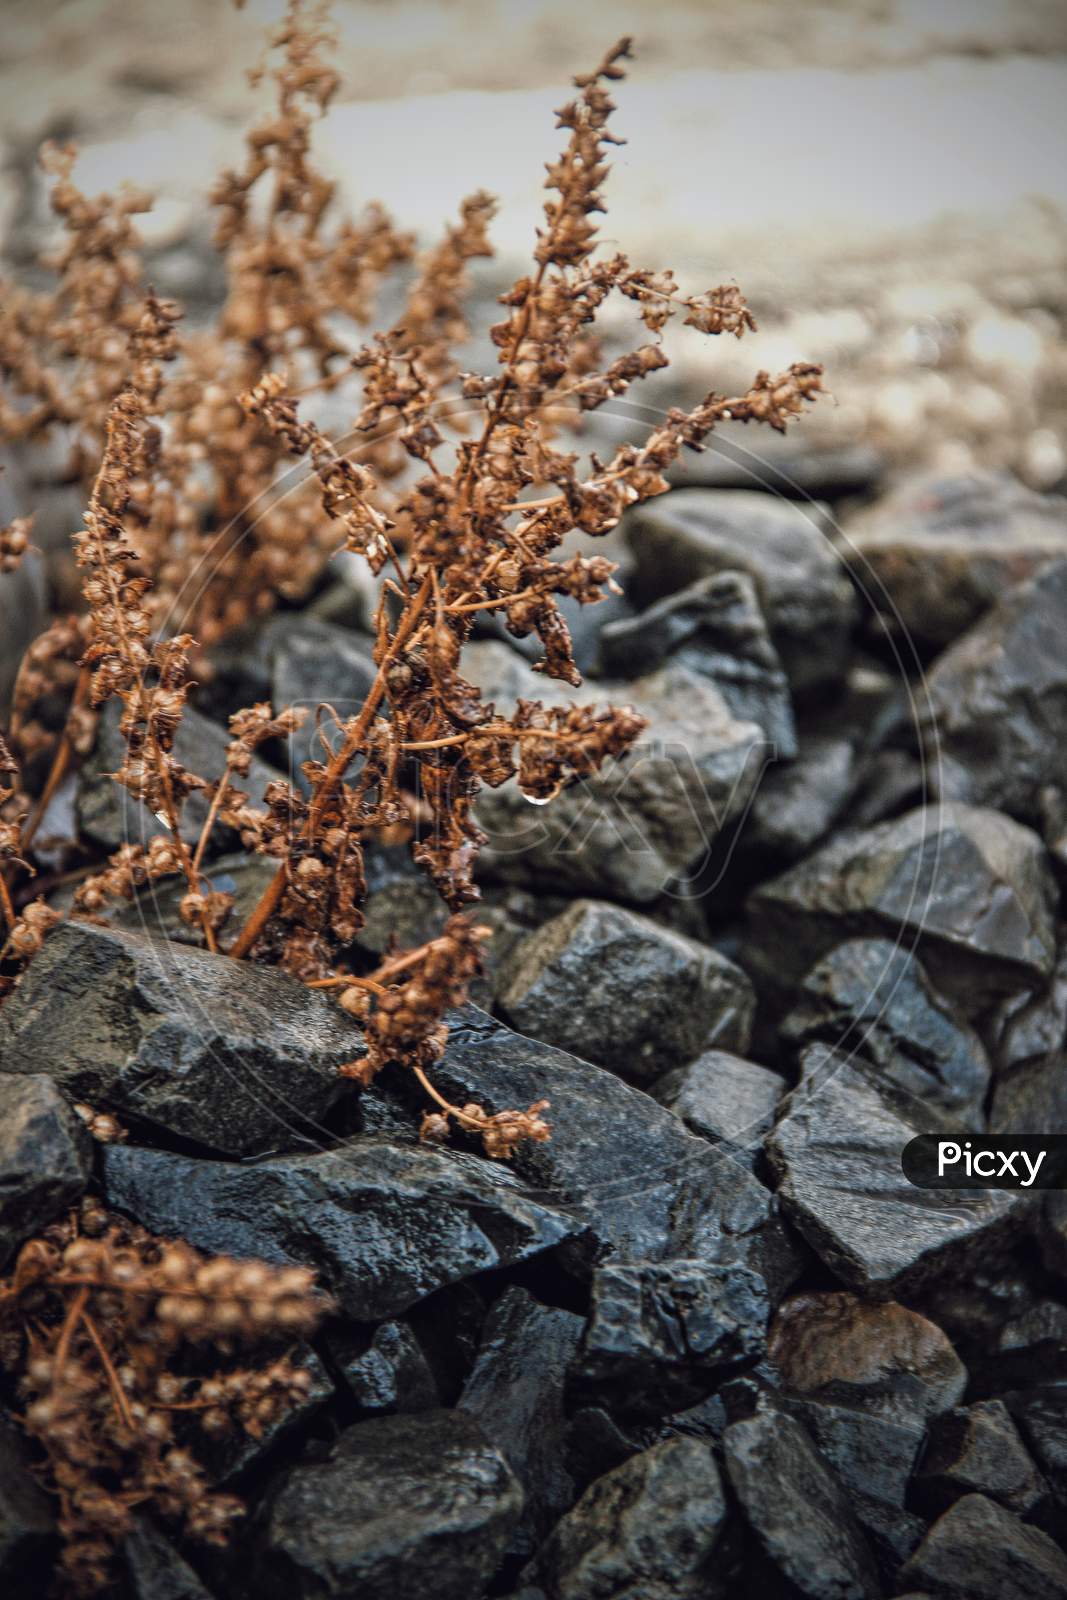 Brown plant growing in stones in rain captured in lockdown